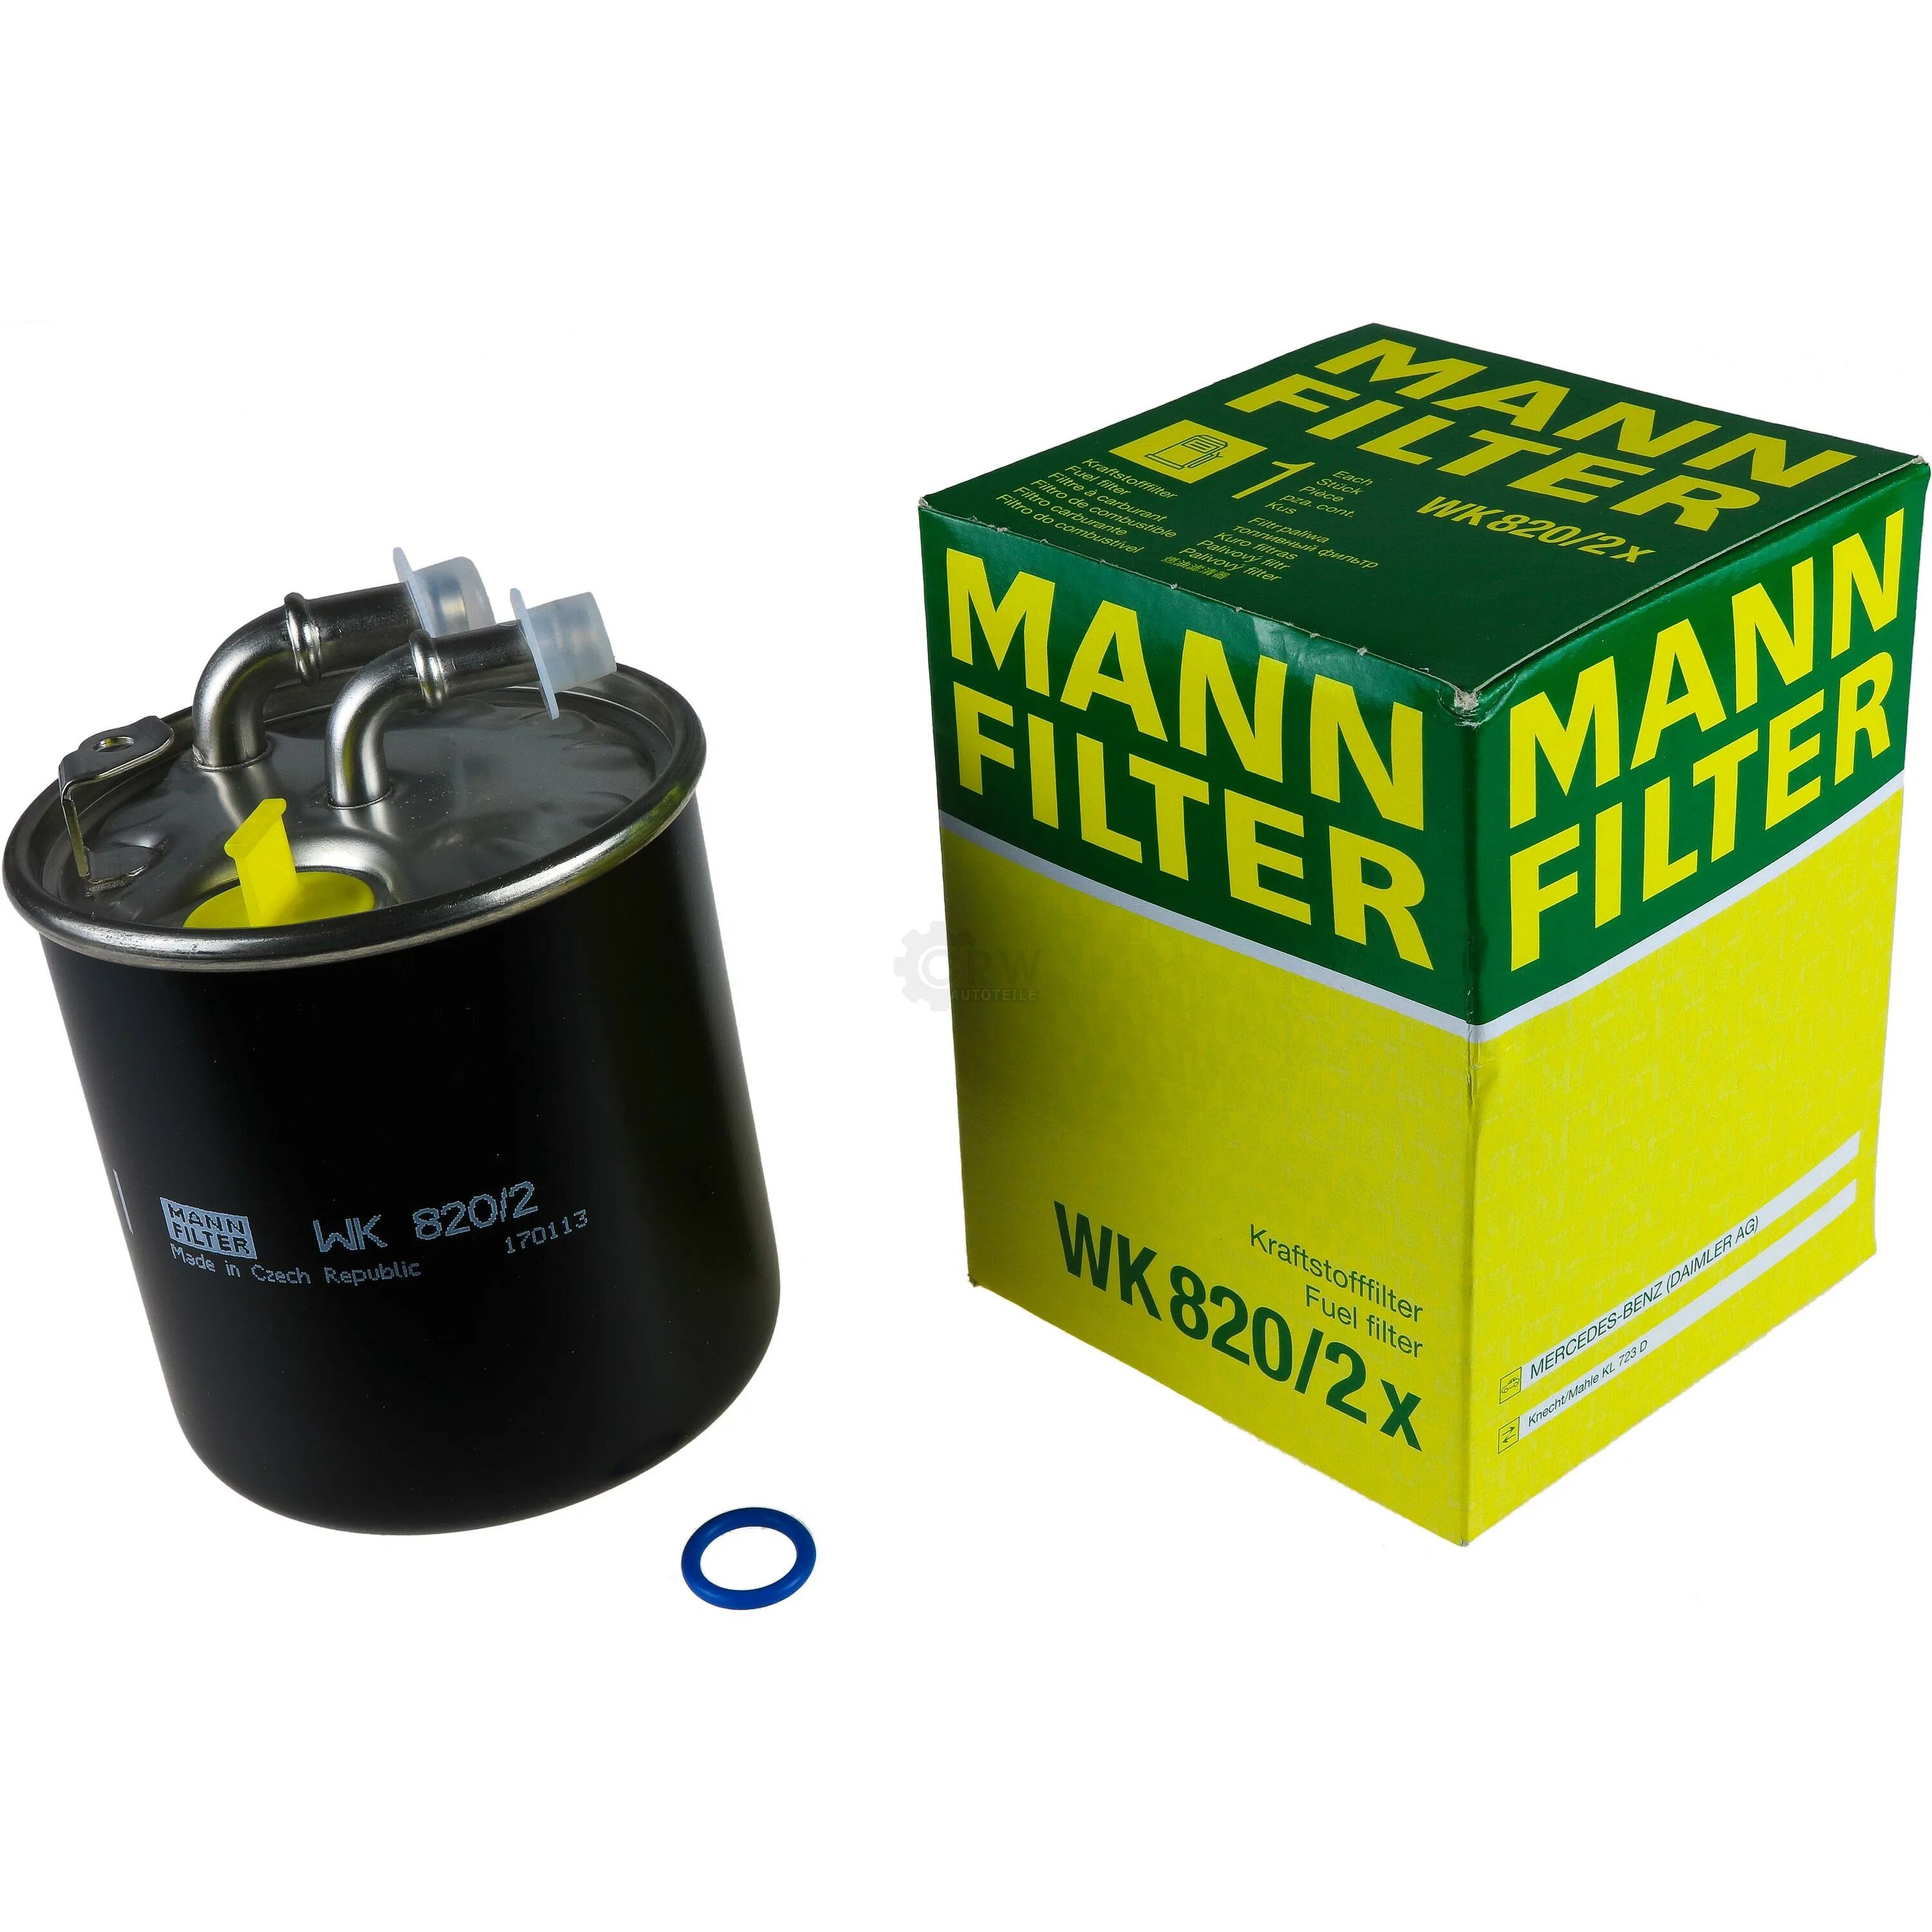 Топливный фильтр дизель отзывы. Mann wk820/2x фильтр топливный. Wk820/2x Mann. Фильтр топливный Mann wk820/14. WK 820/2 X.